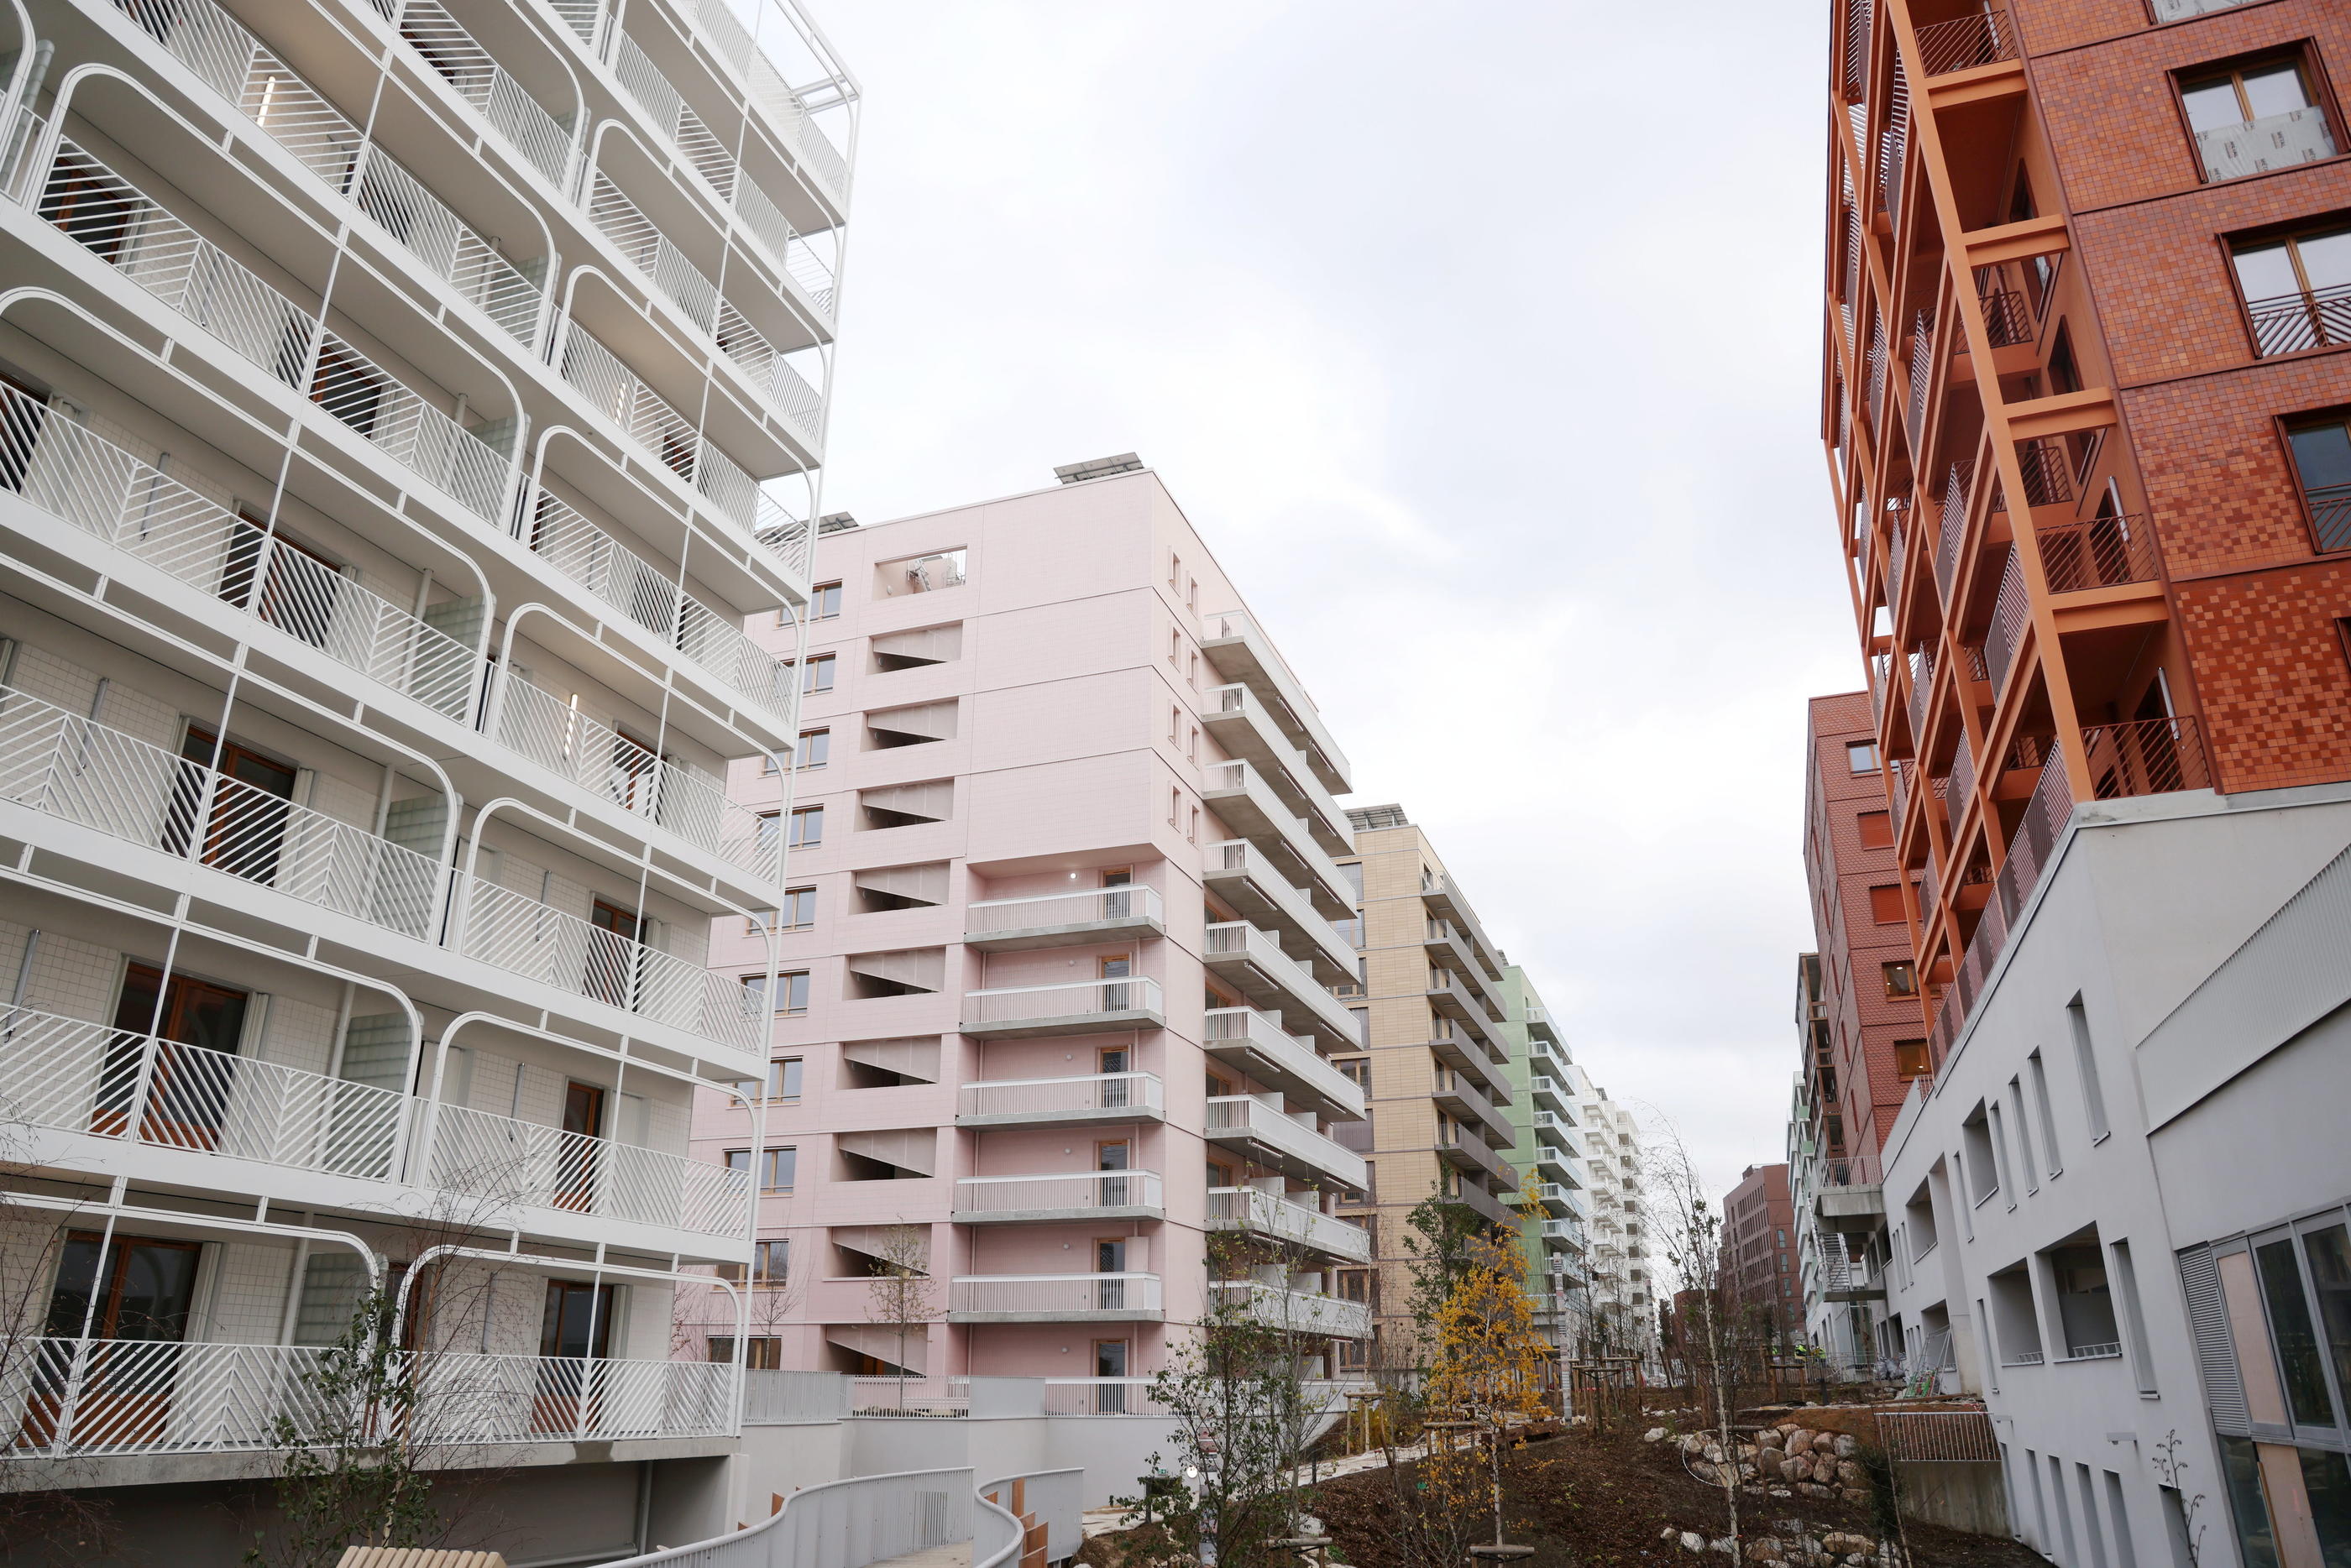 2 800 logements du village olympique seront laissés en héritage aux communes de Saint-Denis, Saint-Ouen et L’Île-Saint-Denis. LP/Jean-Baptiste Quentin